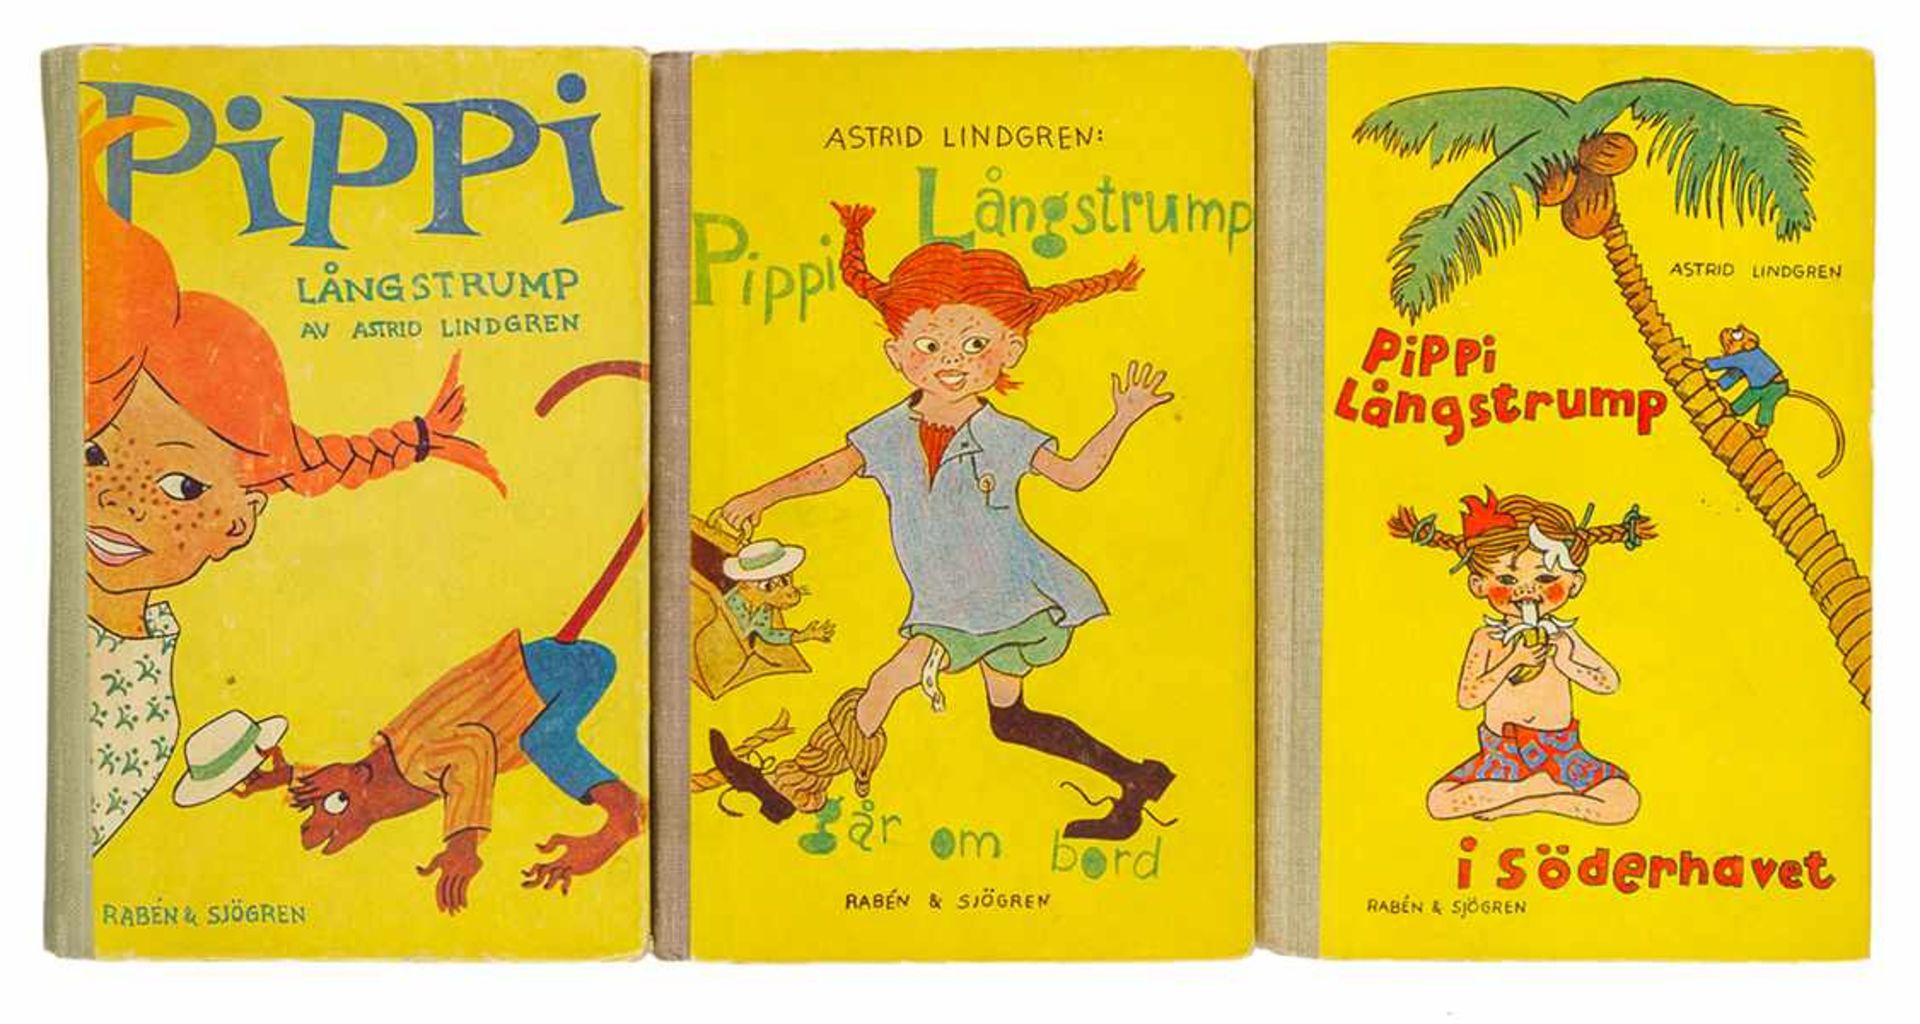 Lindgren, Astrid. Pippi Langstrump. Bände 1-3. Stockholm, Rabén & Stögren, 1945, 1946 und 1948.